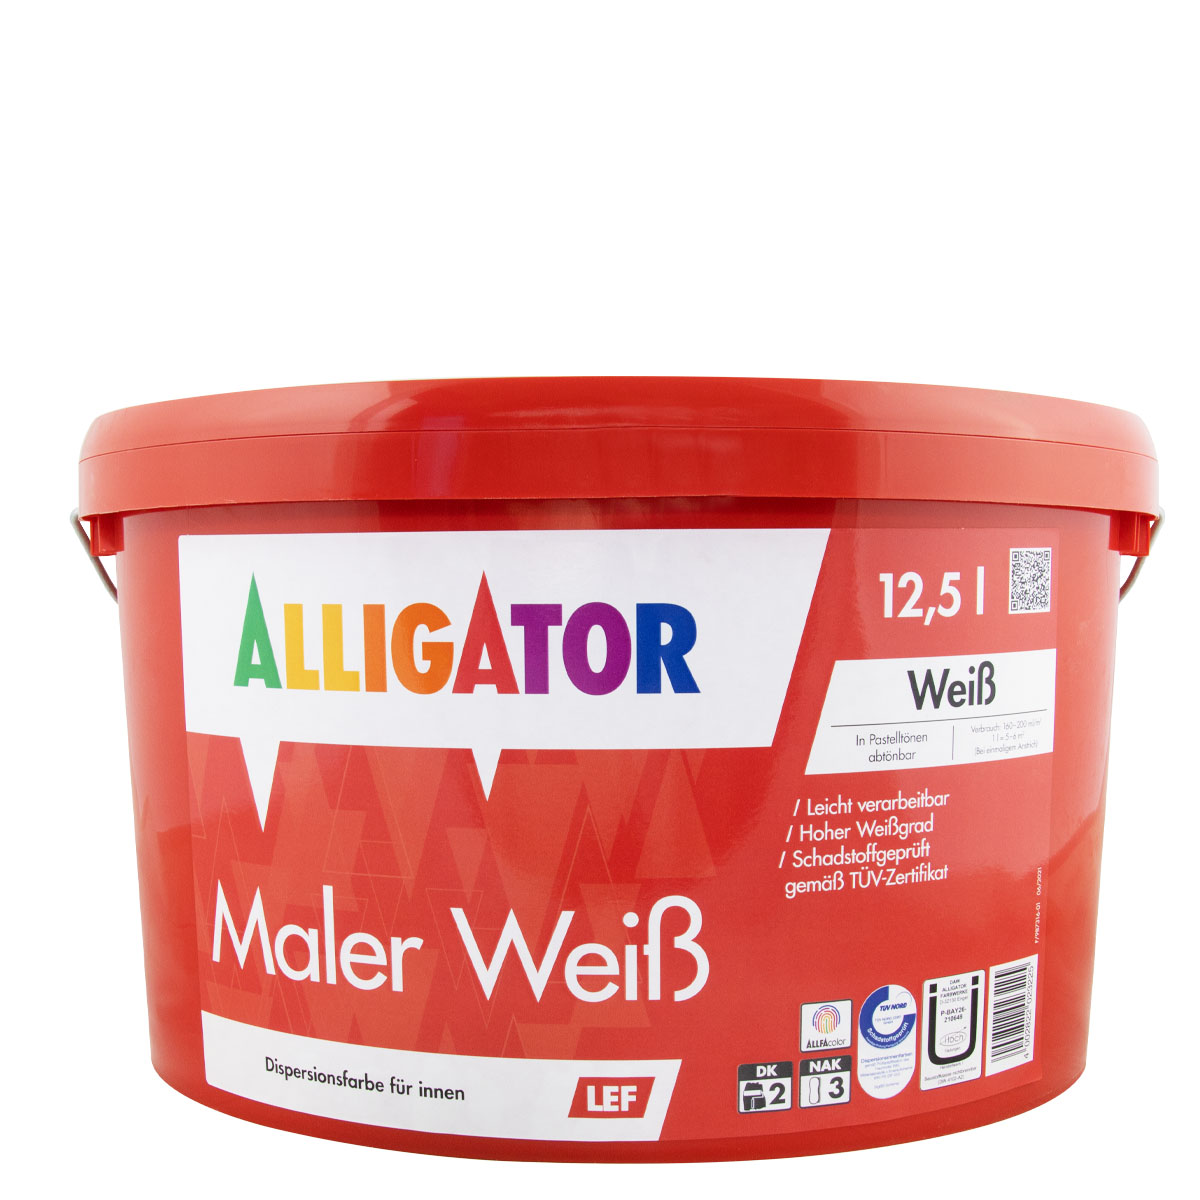 Alligator Maler Weiß LEF 12,5L weiss, sehr gut deckende Wandfarbe, Dispersionsfarbe